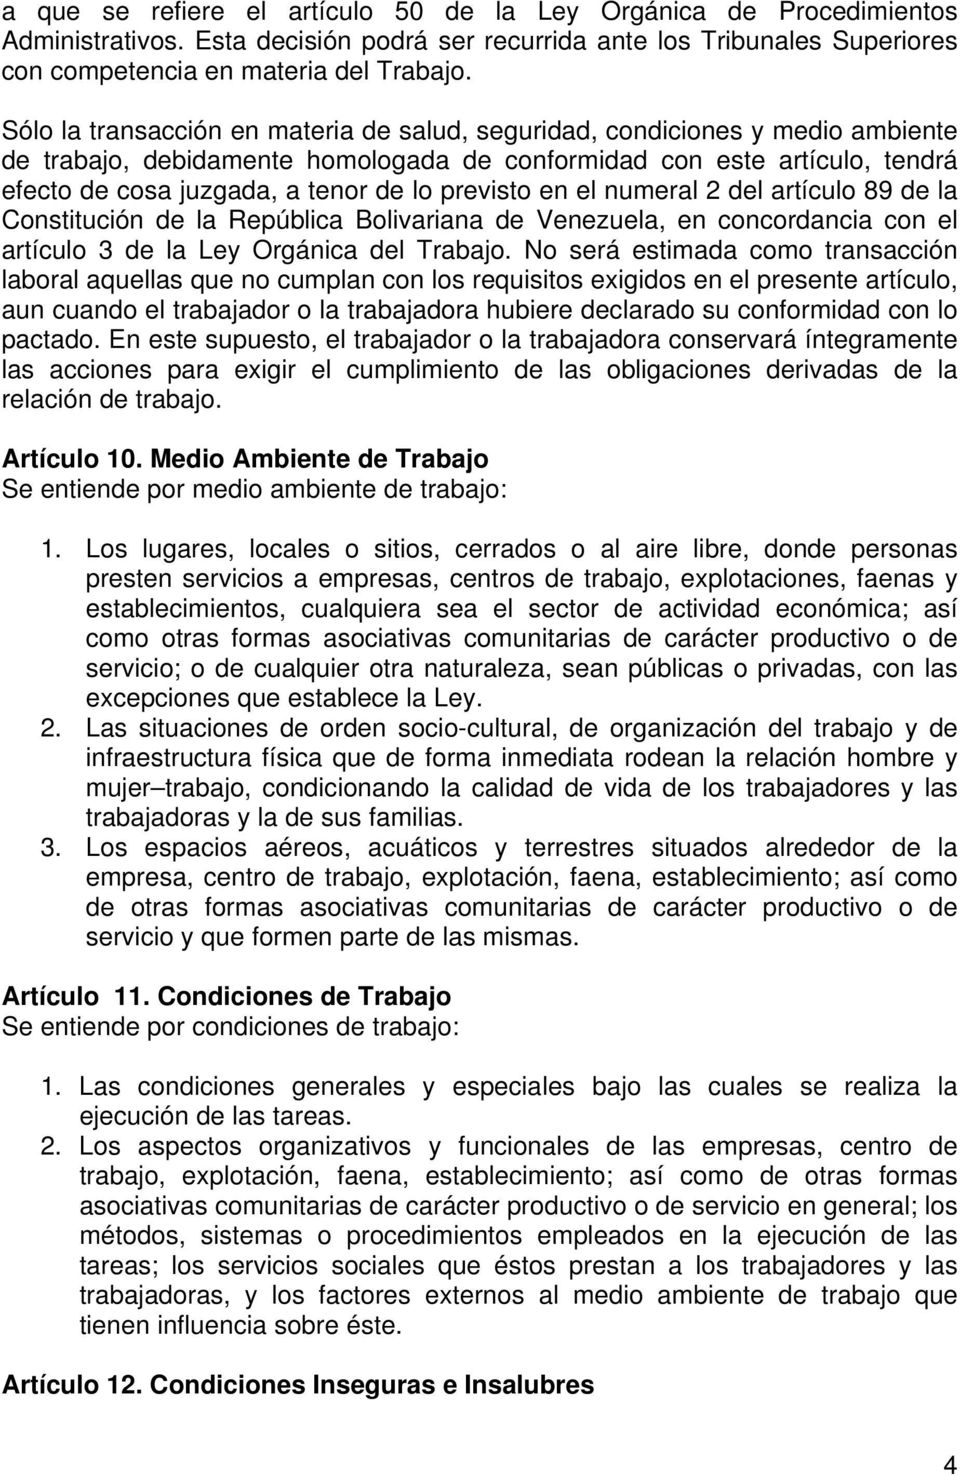 previsto en el numeral 2 del artículo 89 de la Constitución de la República Bolivariana de Venezuela, en concordancia con el artículo 3 de la Ley Orgánica del Trabajo.